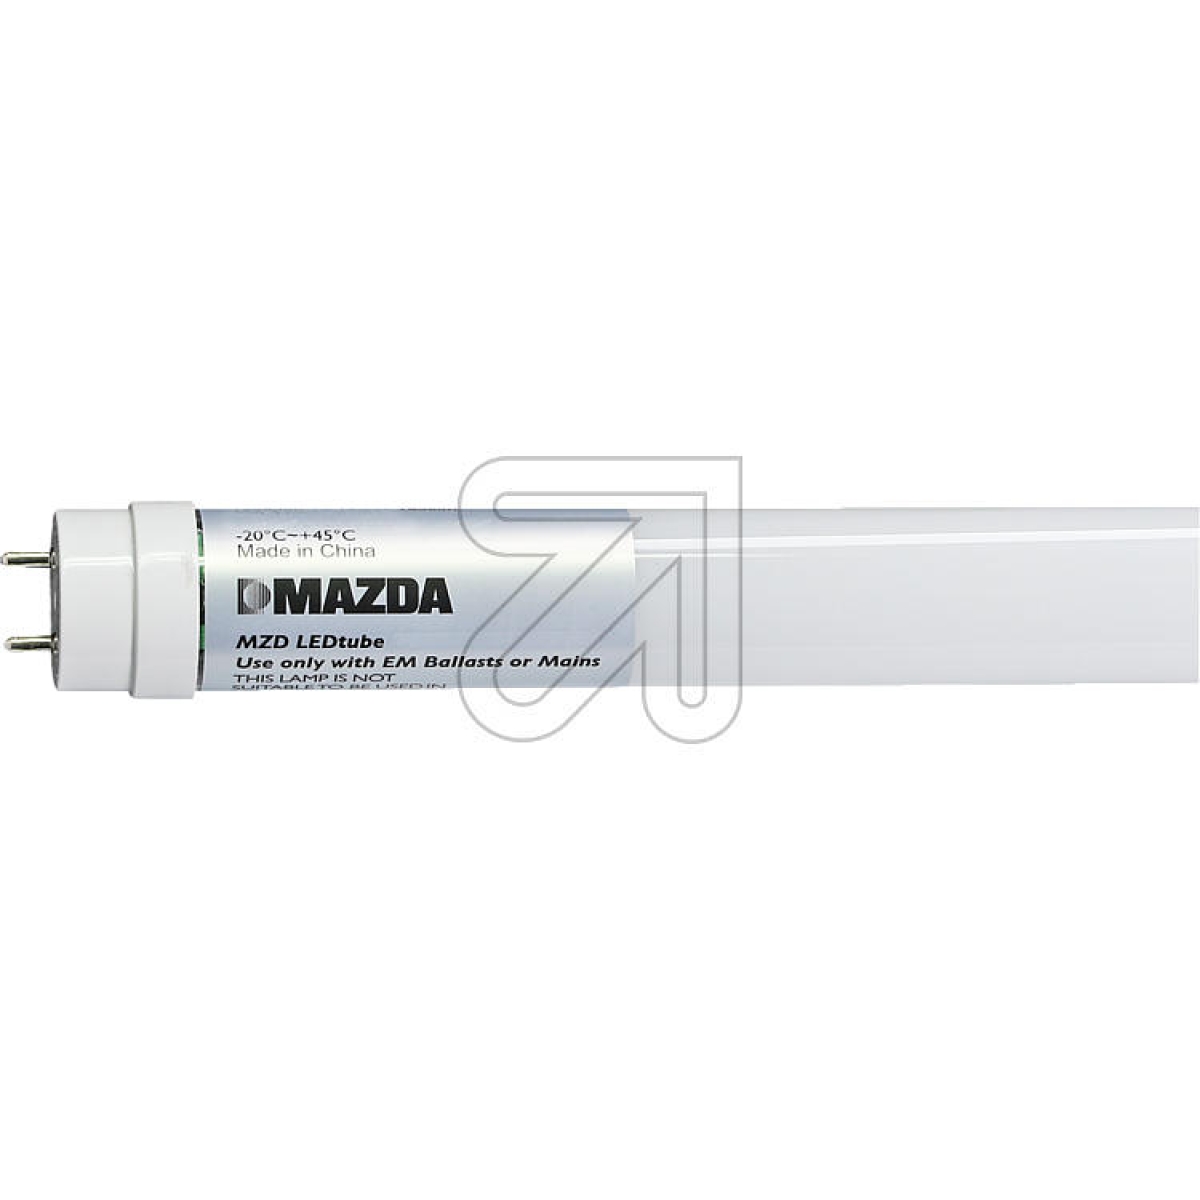 MAZDA LightingMAZDA LEDtube T8 1500mm 20W 840 54332100-Price for 20 pcs.Article-No: 523020